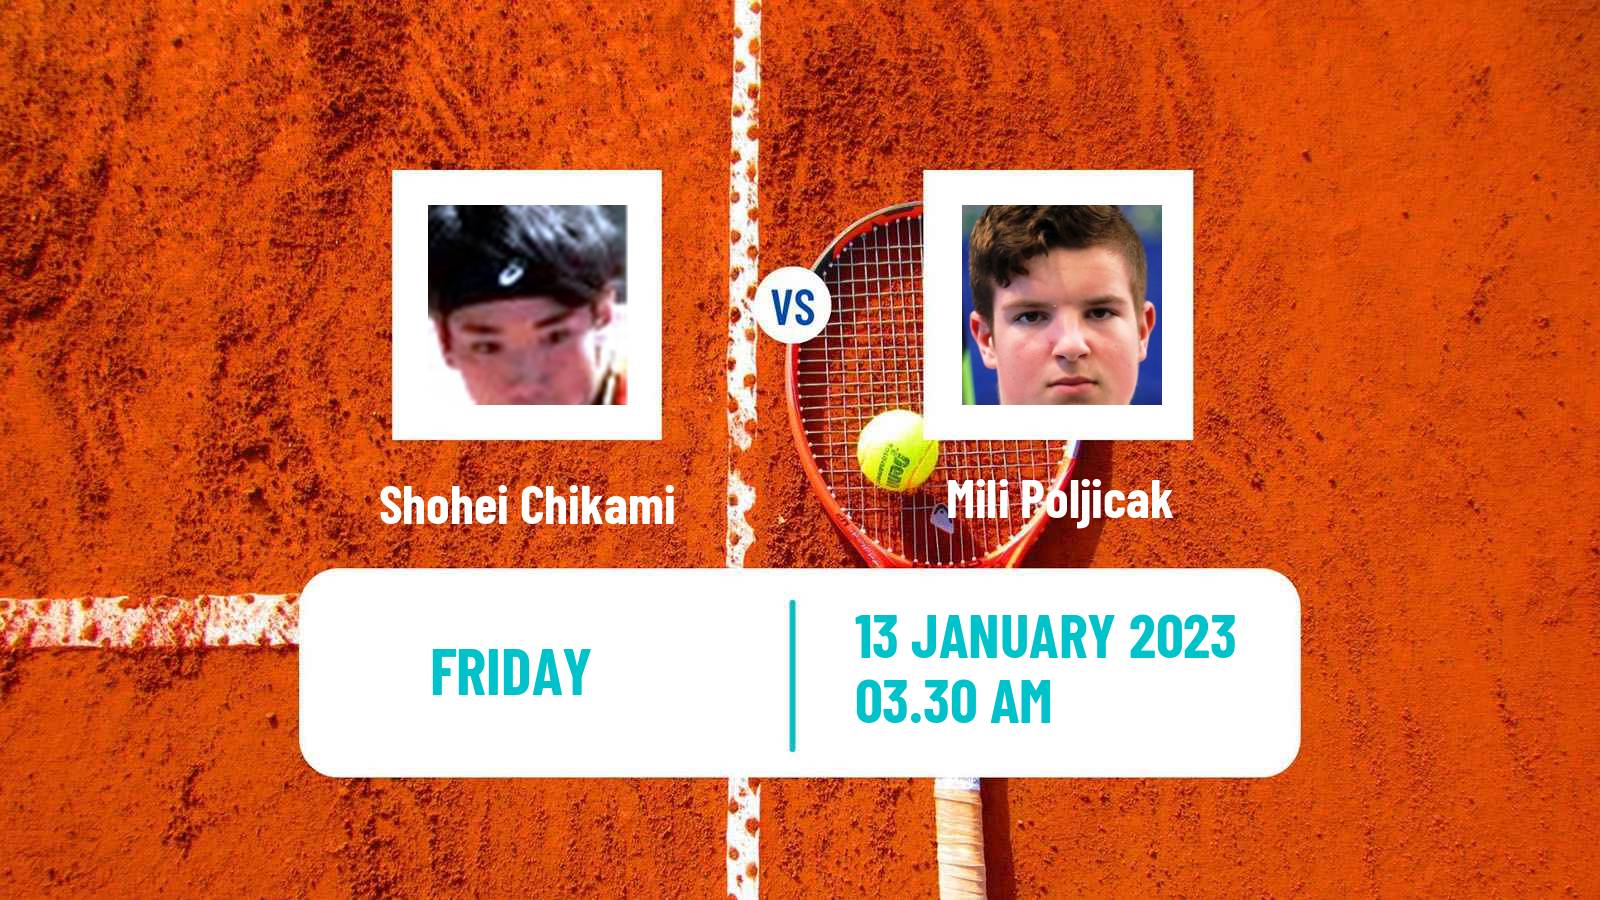 Tennis ITF Tournaments Shohei Chikami - Mili Poljicak